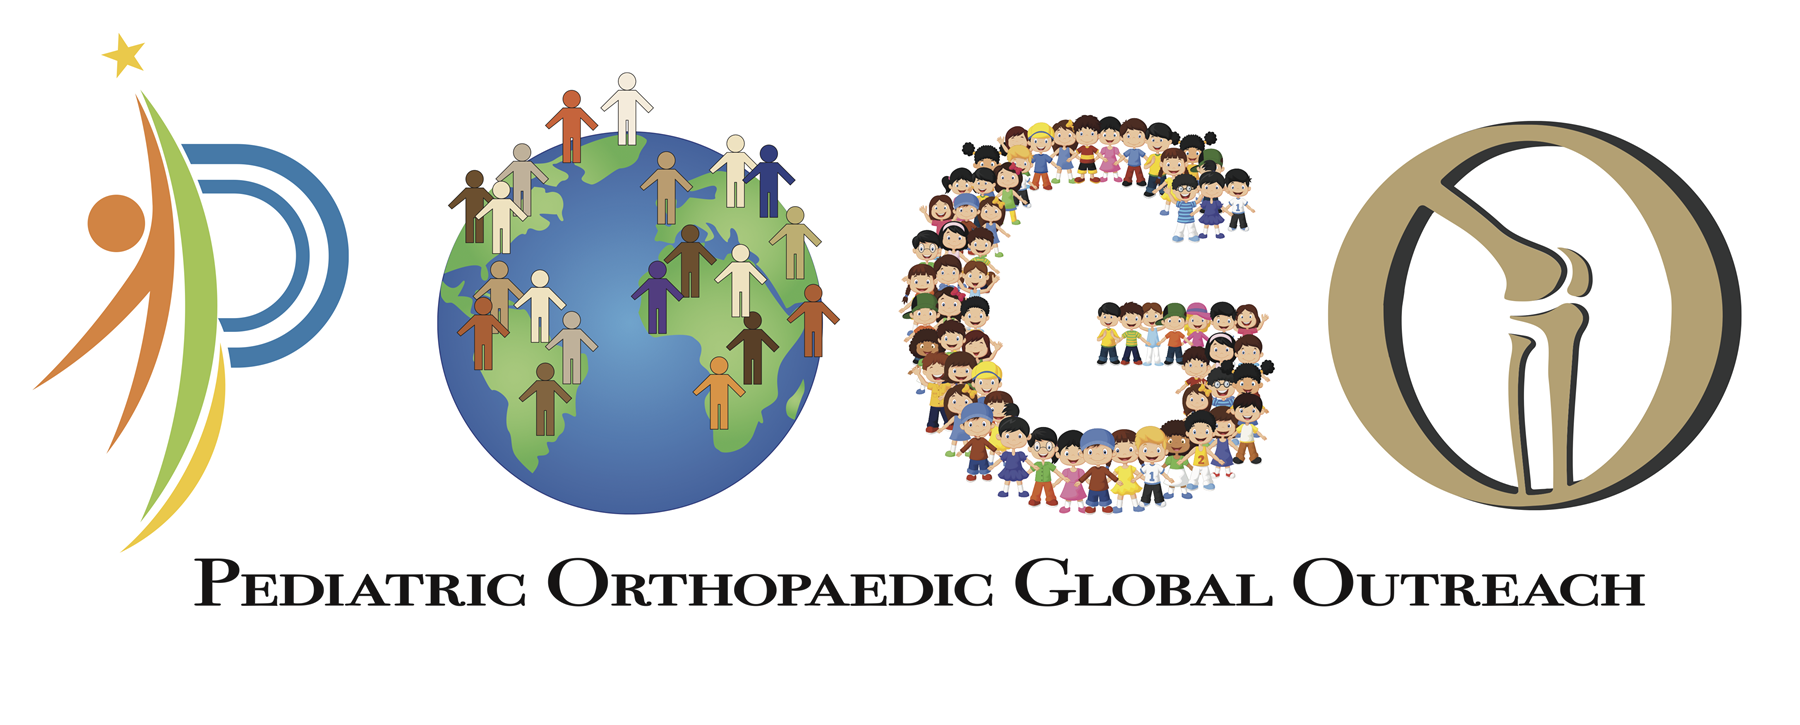 Pediatric Orthopaedic Global Outreach